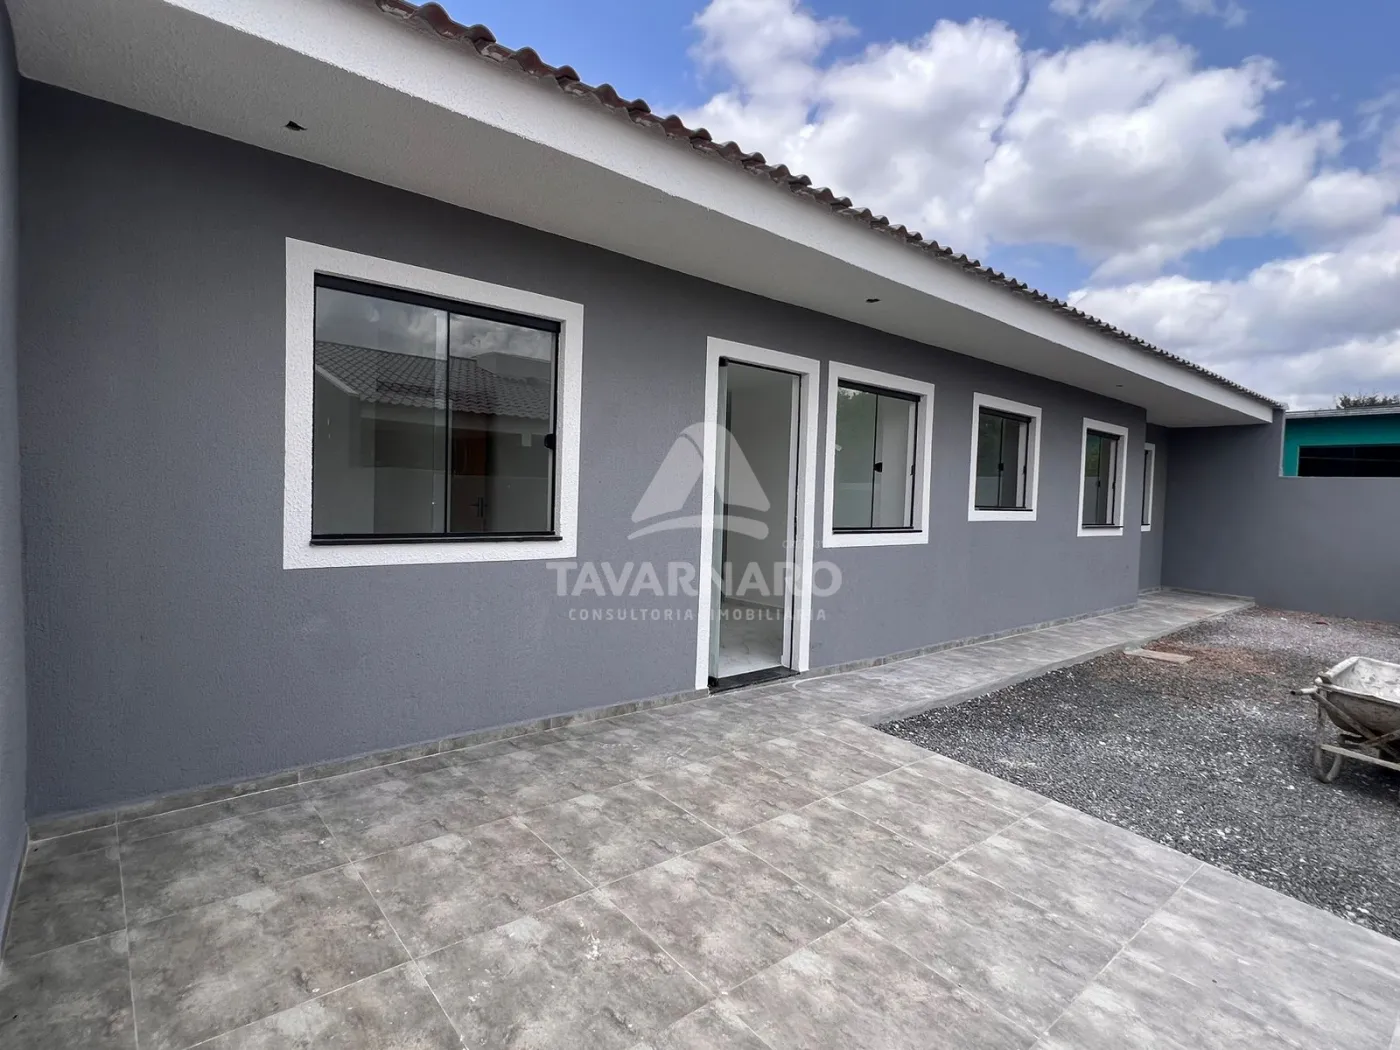 Comprar Casa / Padrão em Ponta Grossa R$ 240.000,00 - Foto 1